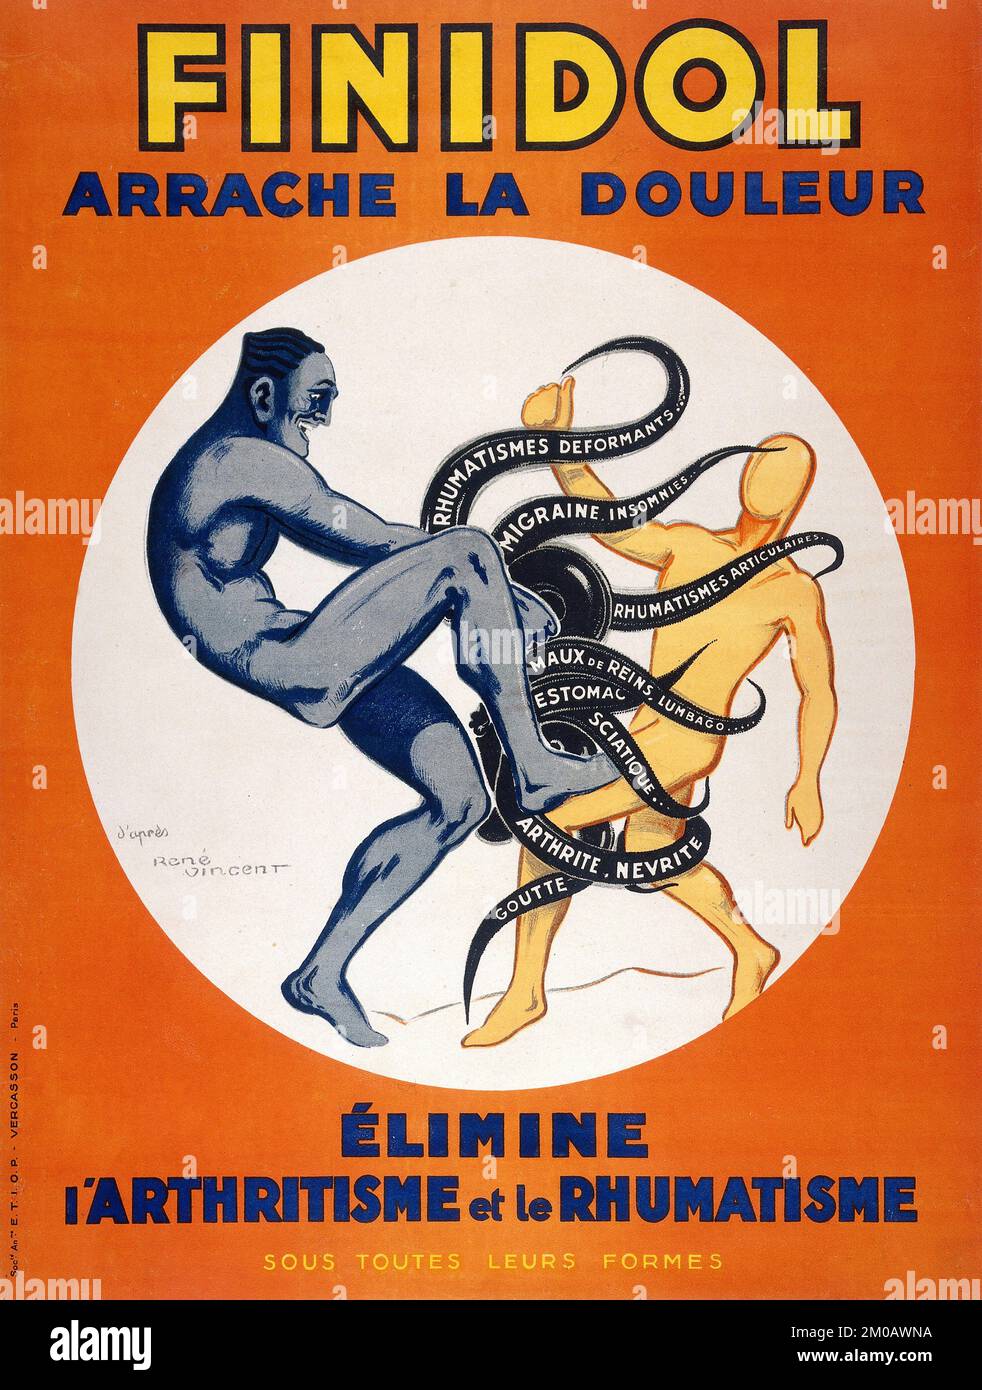 Affiche publicitaire vintage - Un homme représentant le remède Finidol sauve un autre homme des griffes d'une pieuvre - René Vincent (1879-1936) Banque D'Images